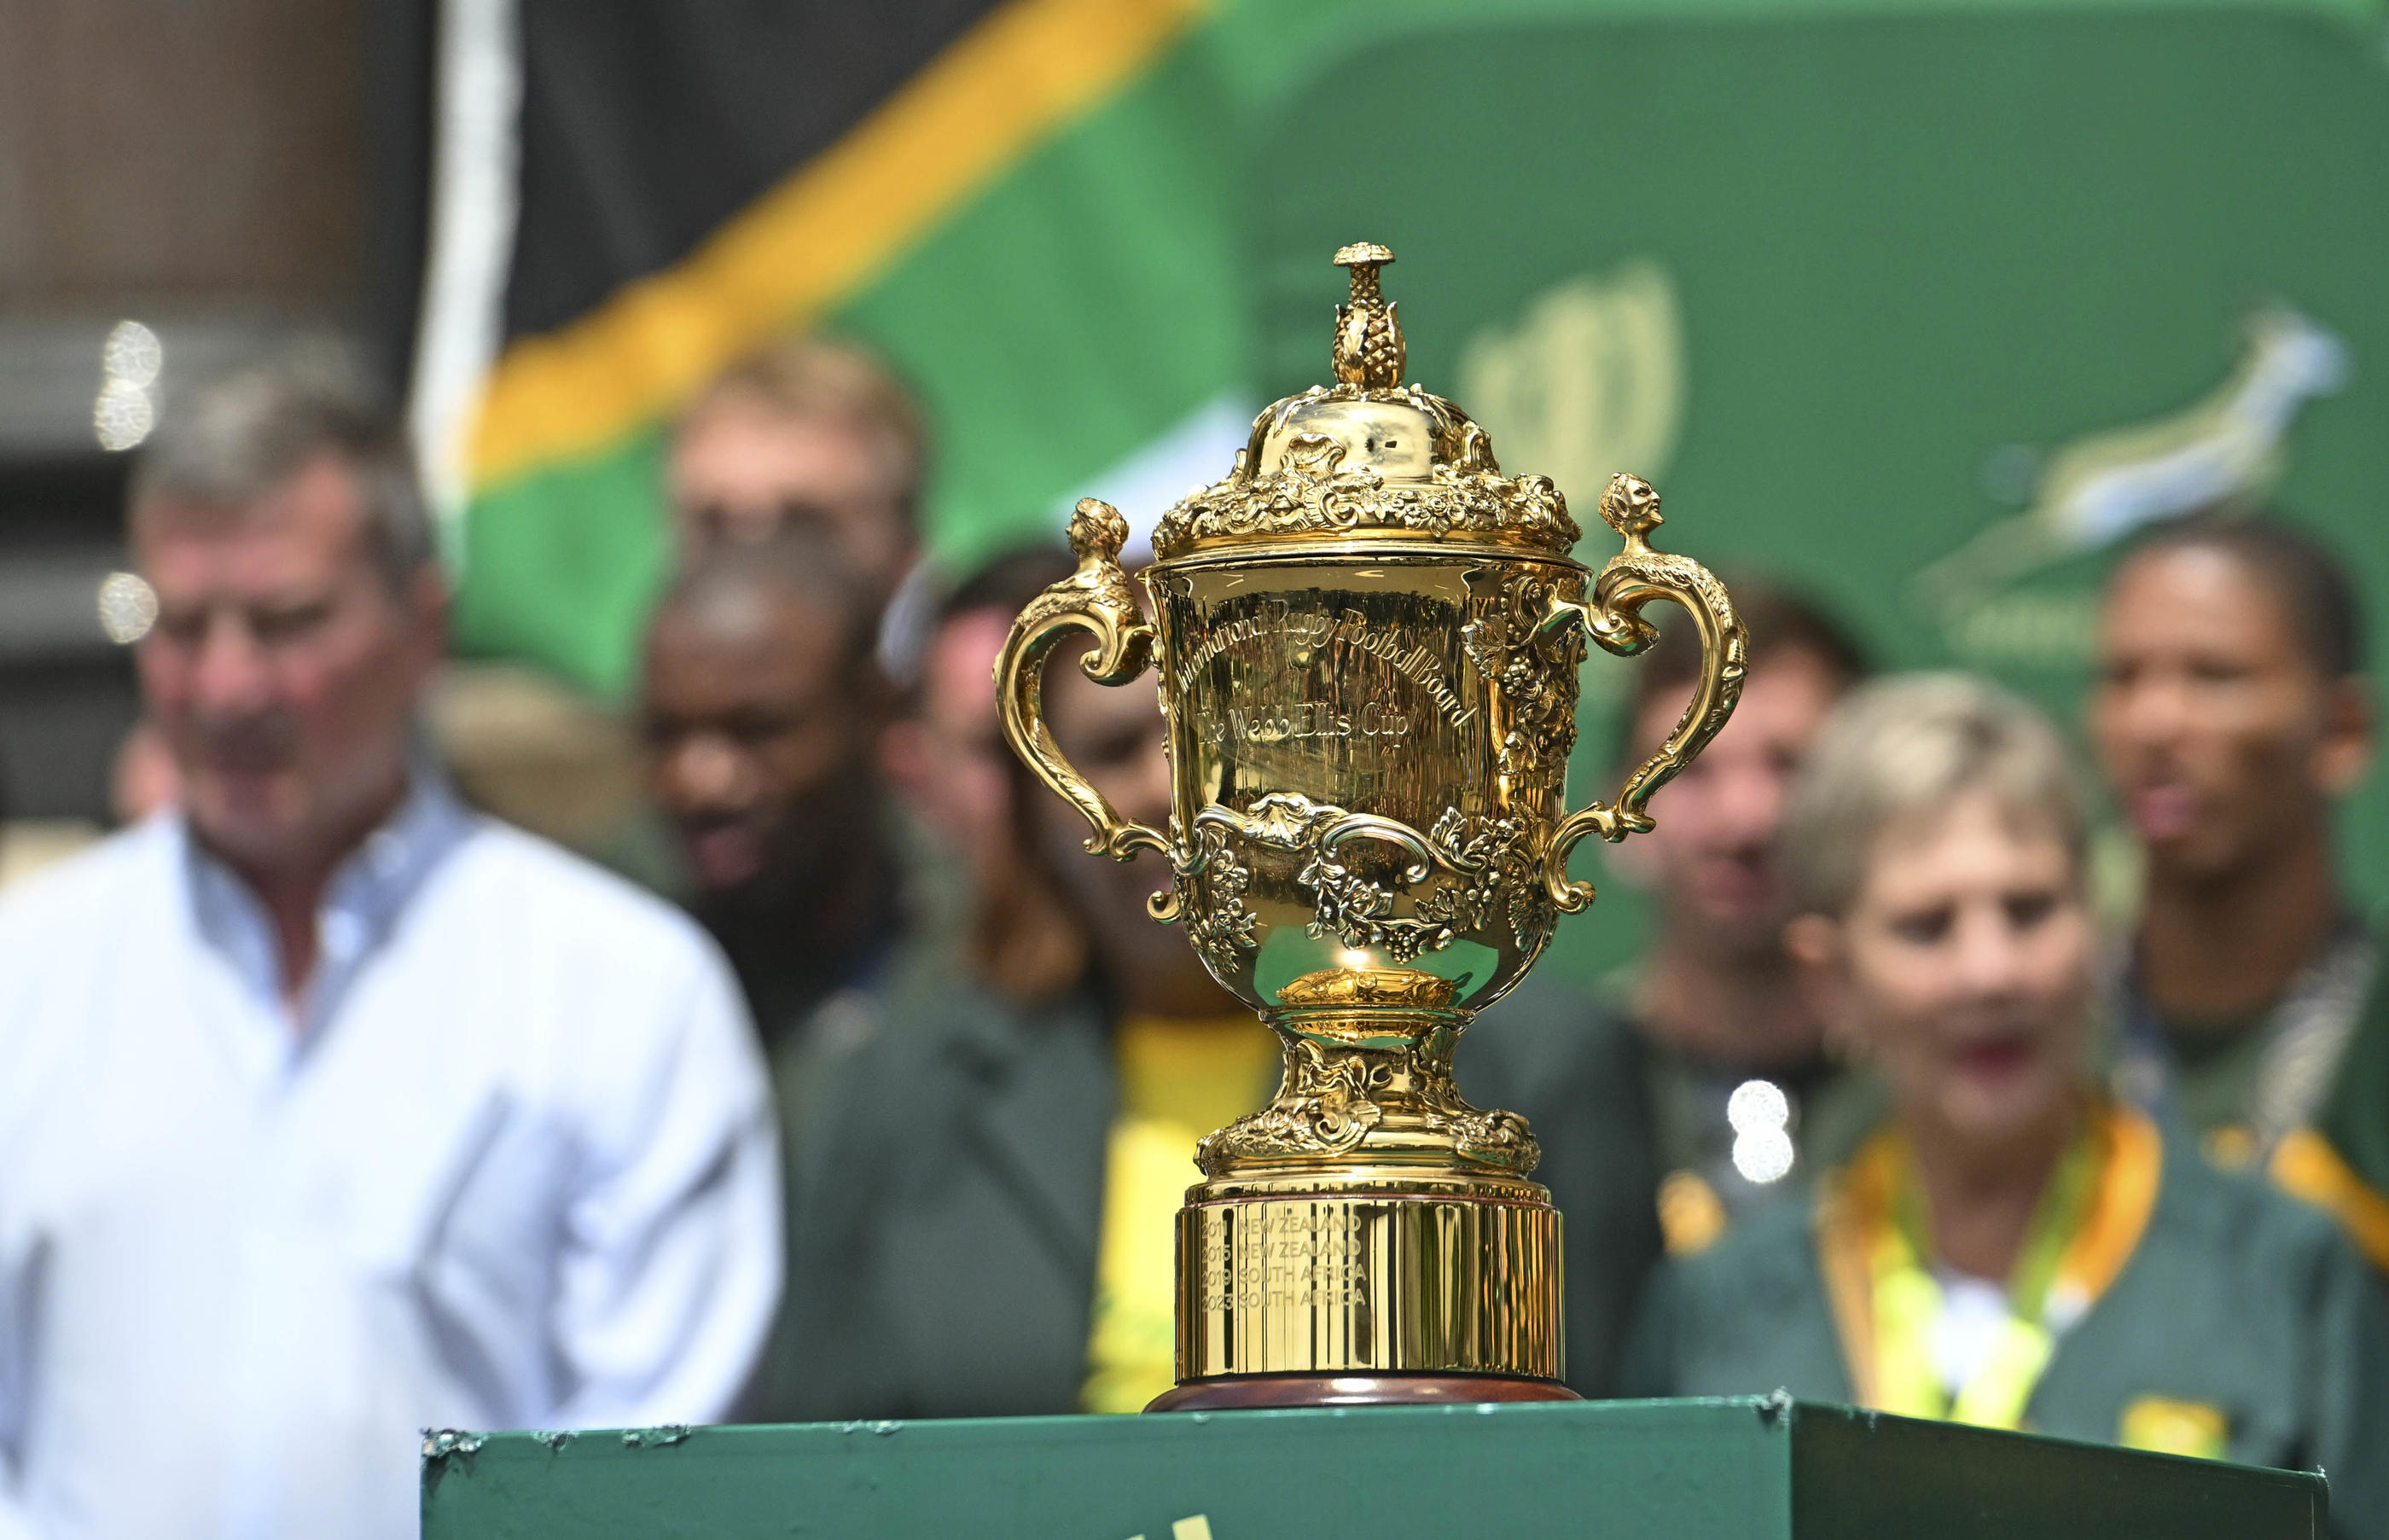 Des cambrioleurs se sont introduits dans les bureaux de la  fédération de rugby sud-africaine, mais le trophée de la Coupe du monde est en sécurité.
Icon sport